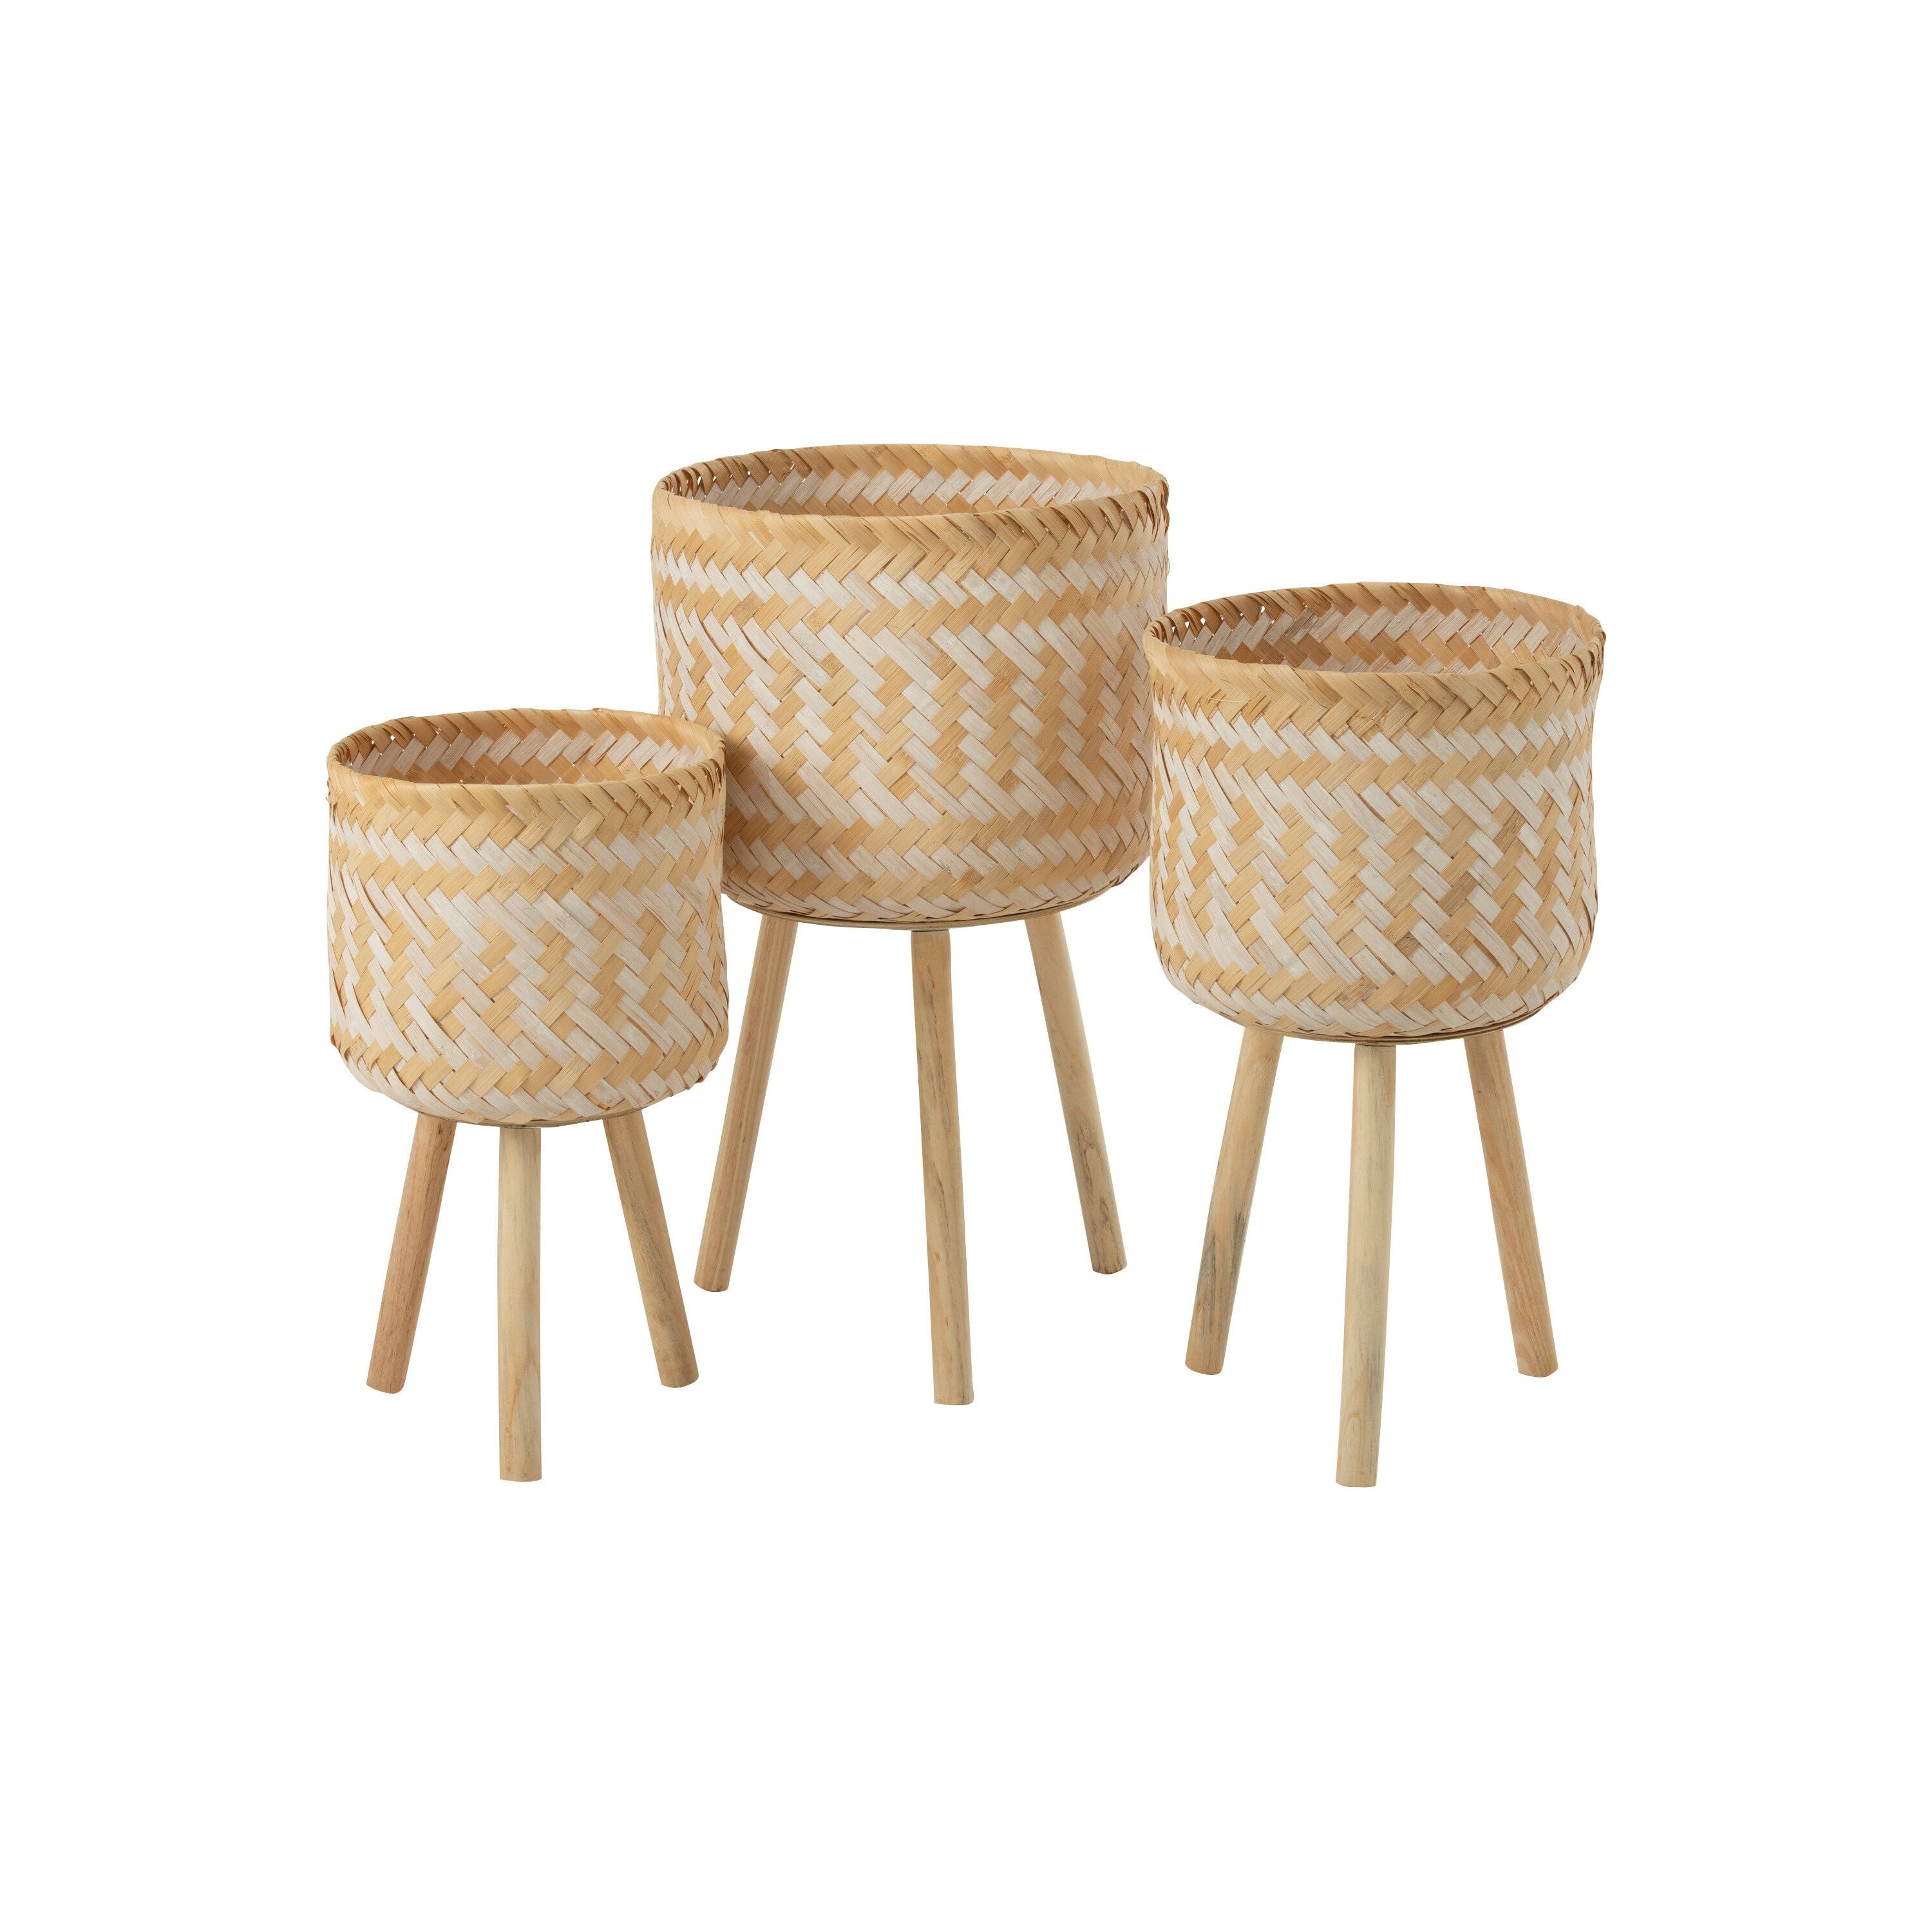 Basket Patterns 3 Legs Bamboo Natural/white